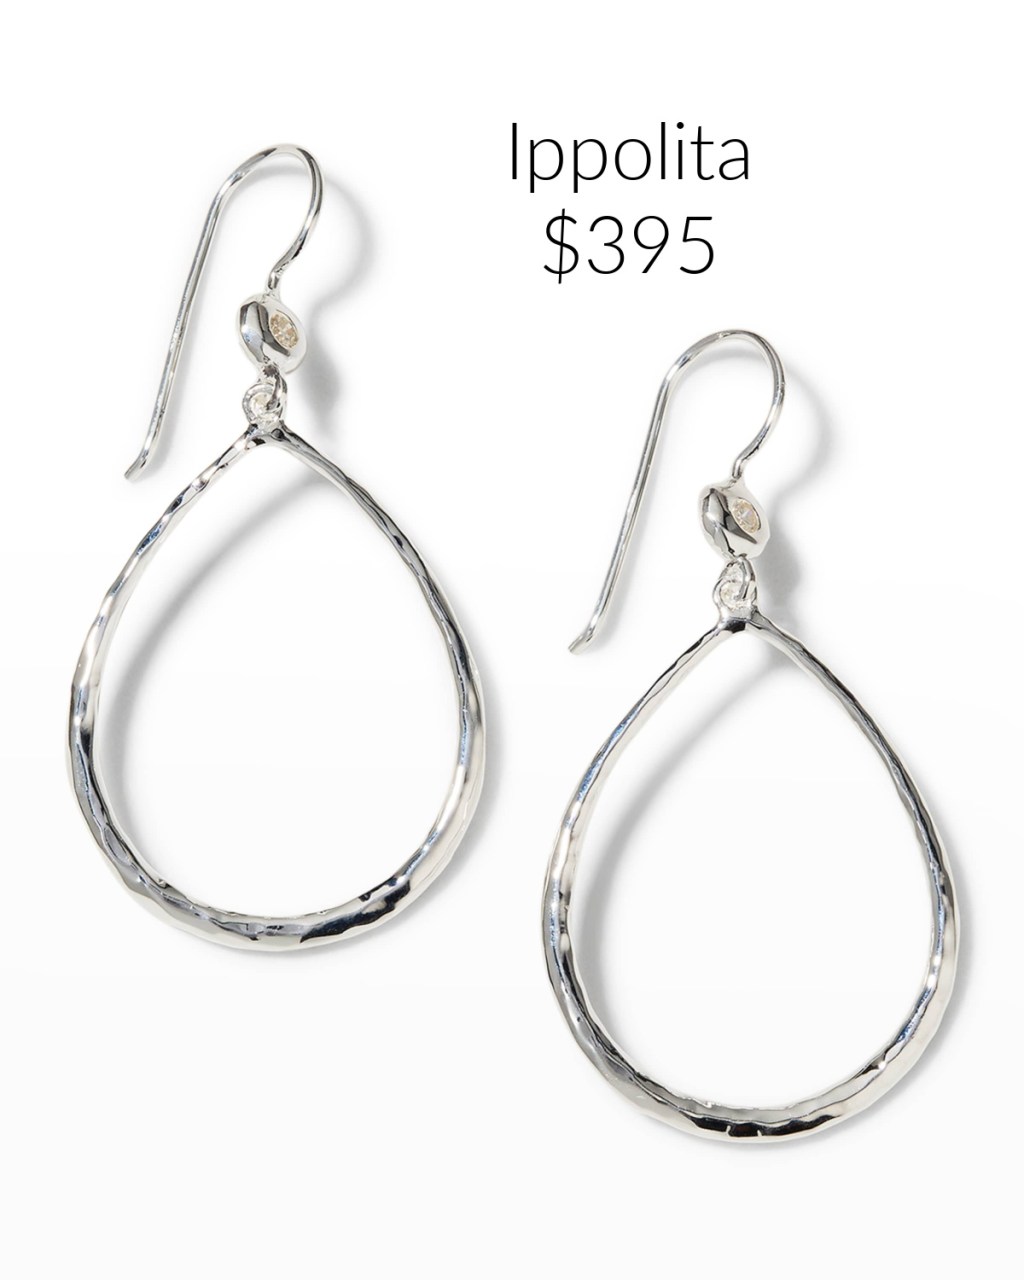 Ippolita Teardrop Earrings